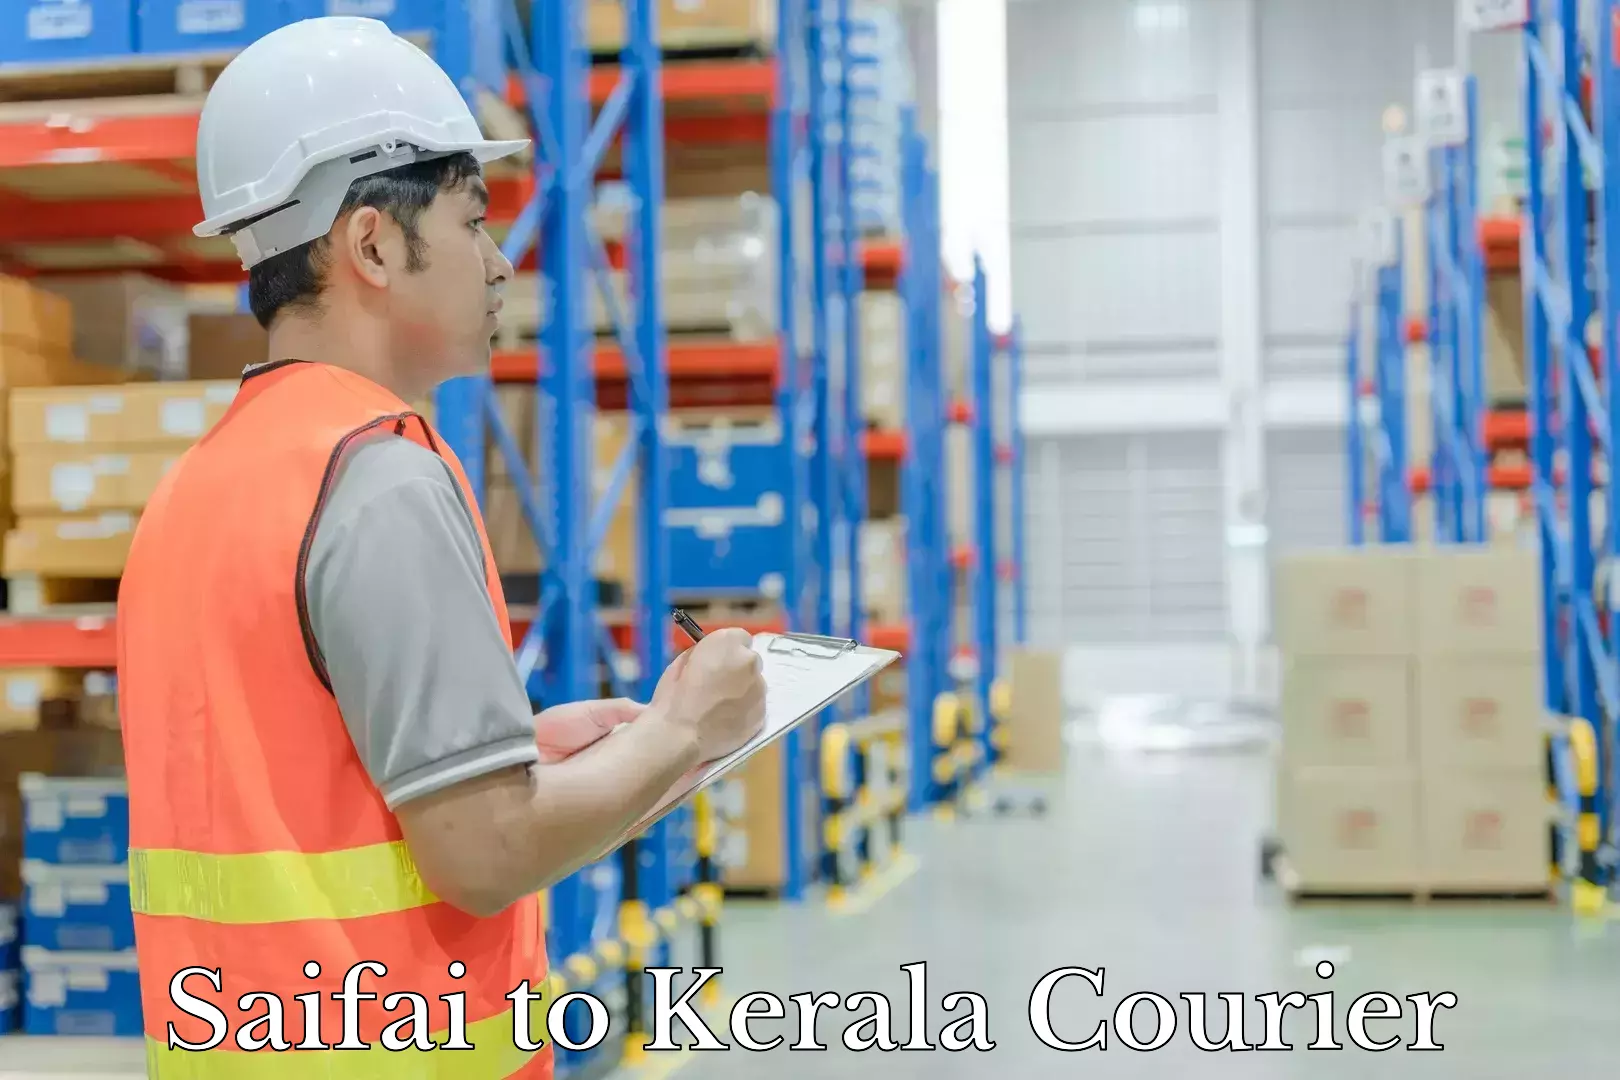 Personal effects shipping Saifai to Kerala